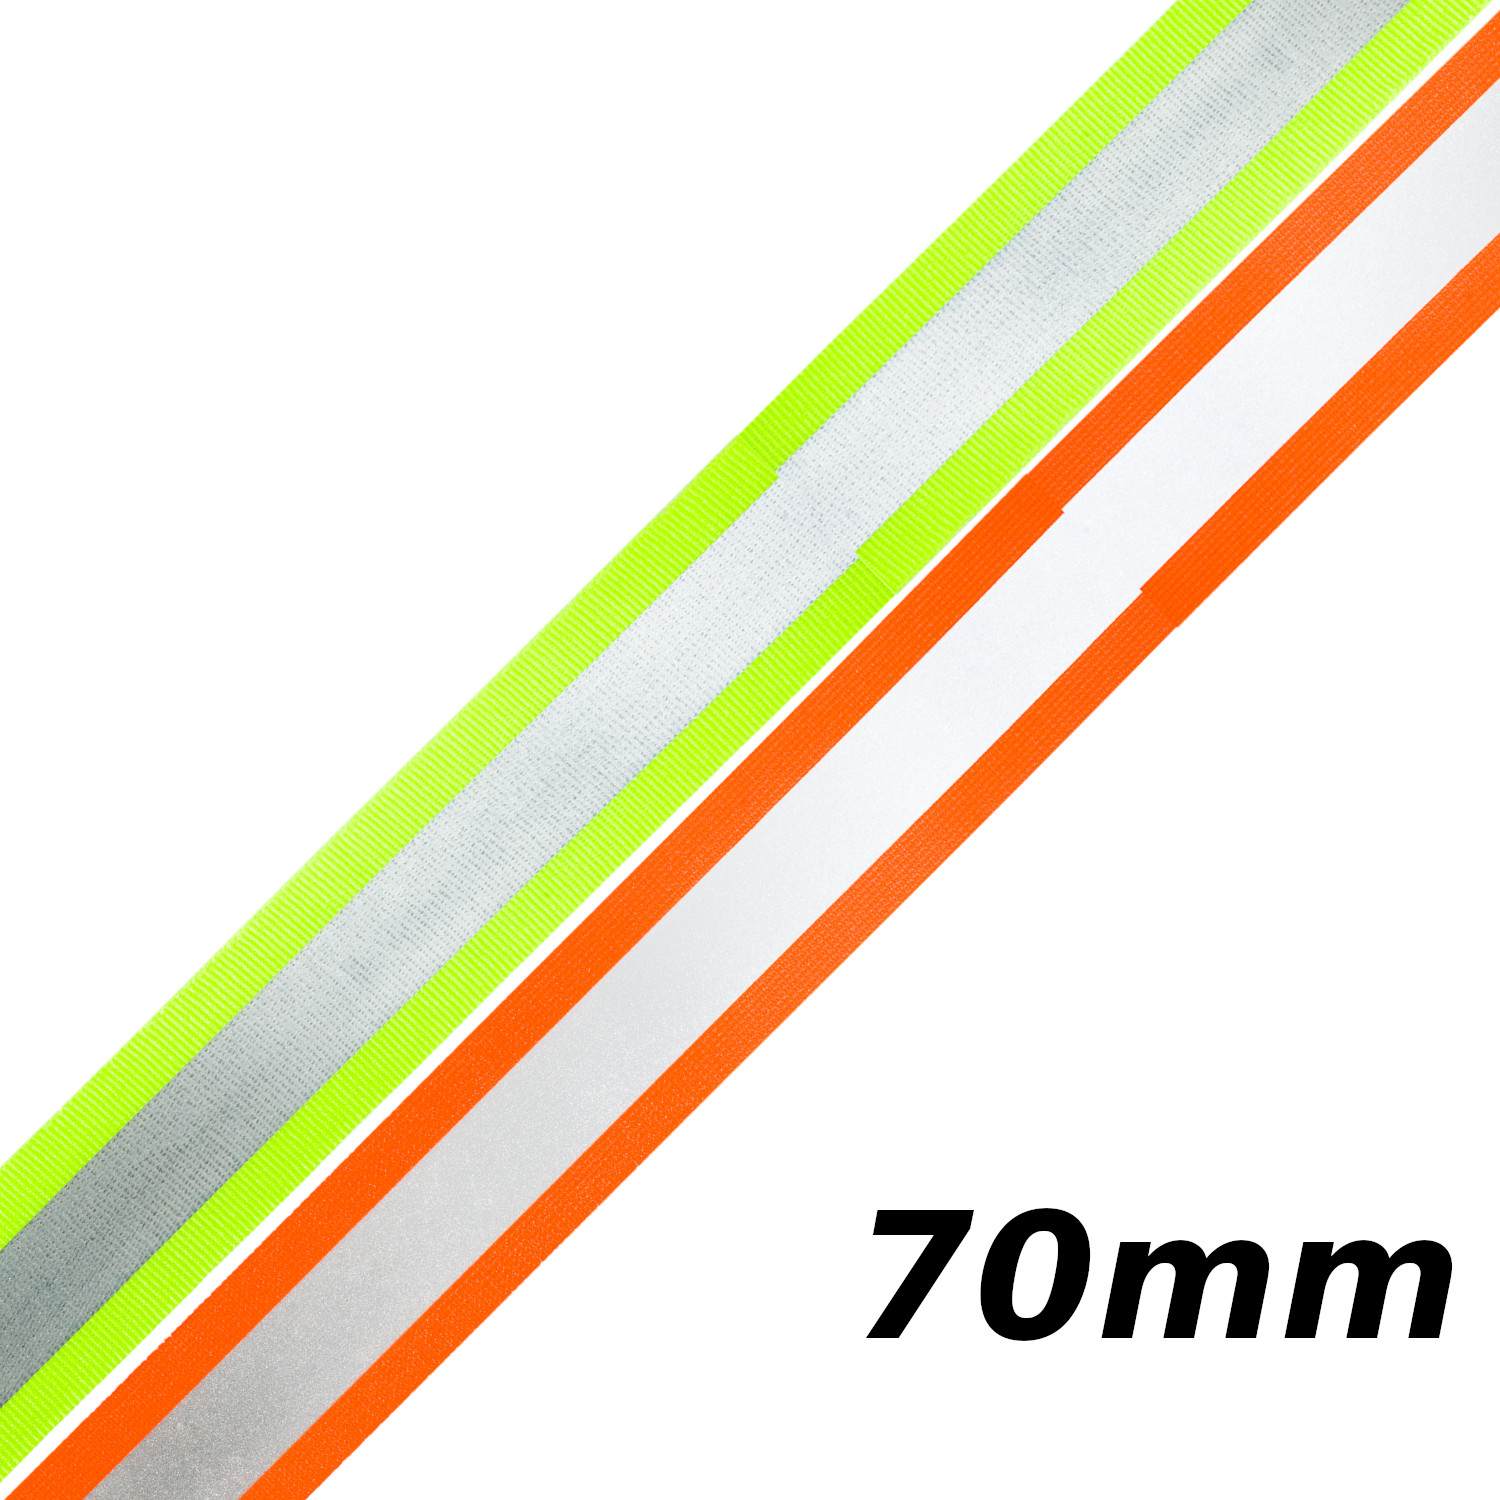 Reflektorband 70mm breit in 2 Farben